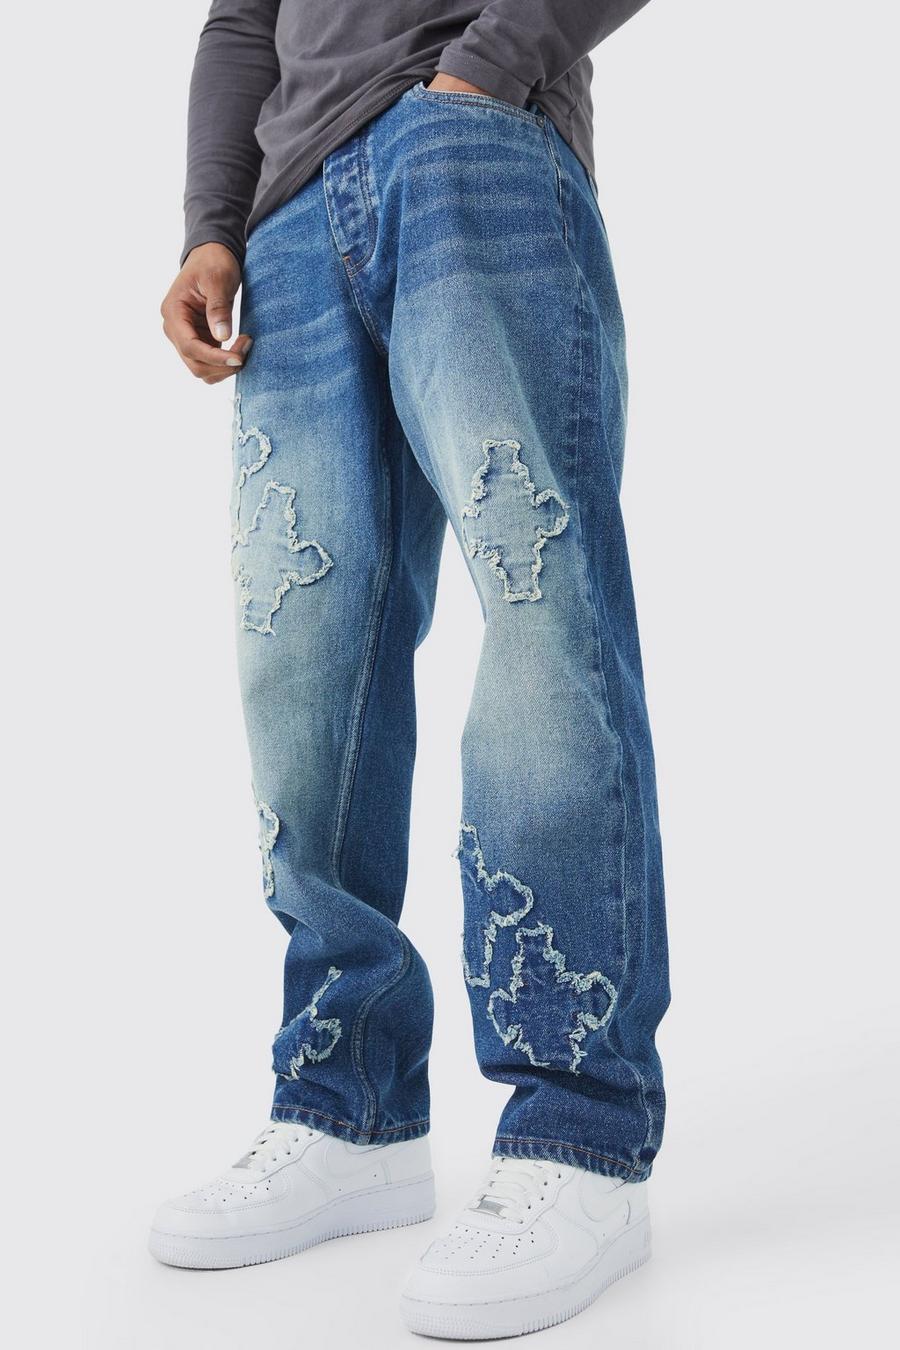 Lockere Jeans mit rohem Saum und Kreuz-Applikation, Antique wash bleu